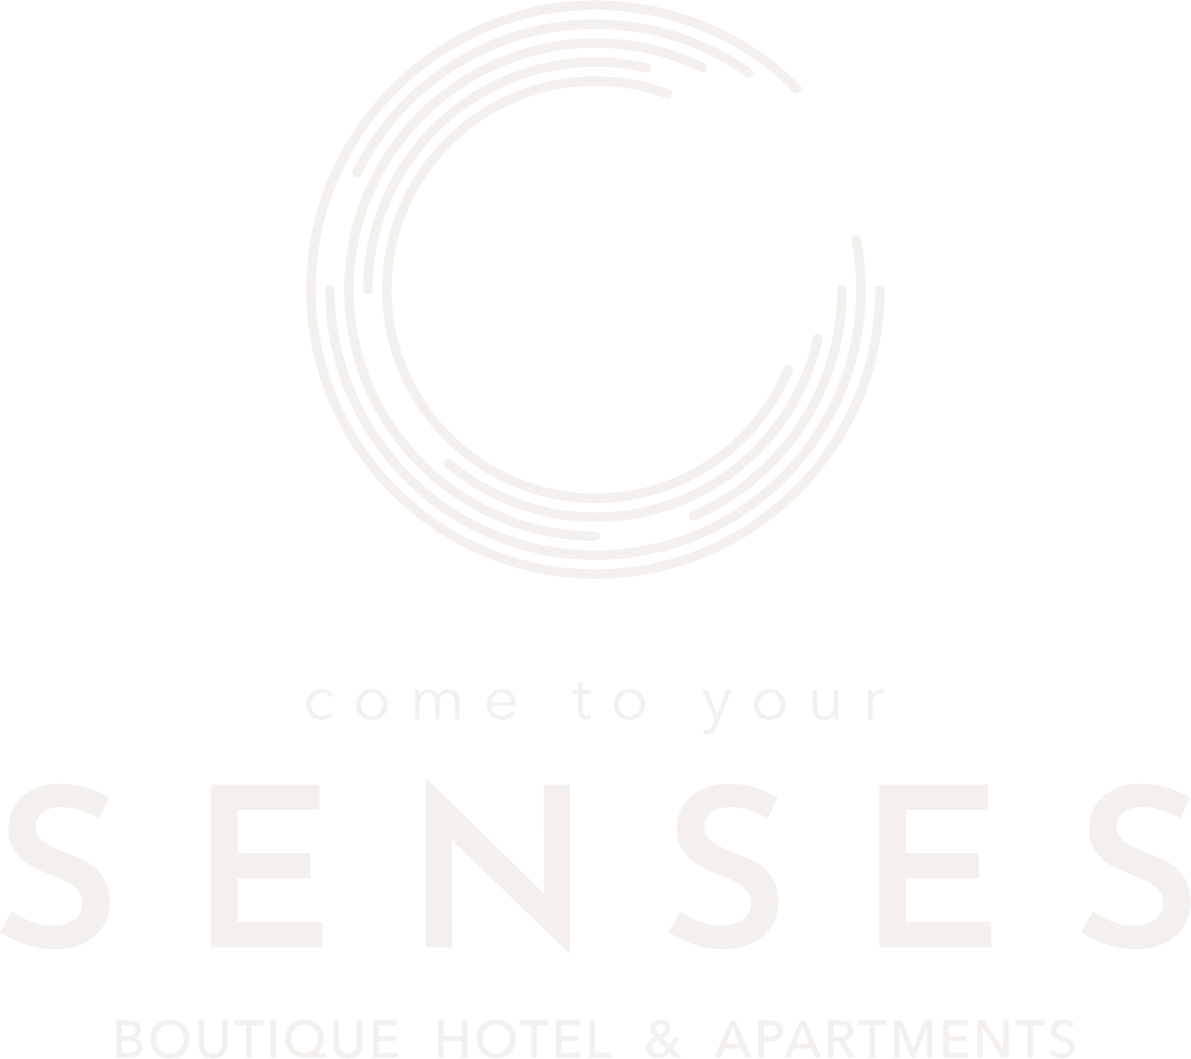 Senses logo vintagewhite